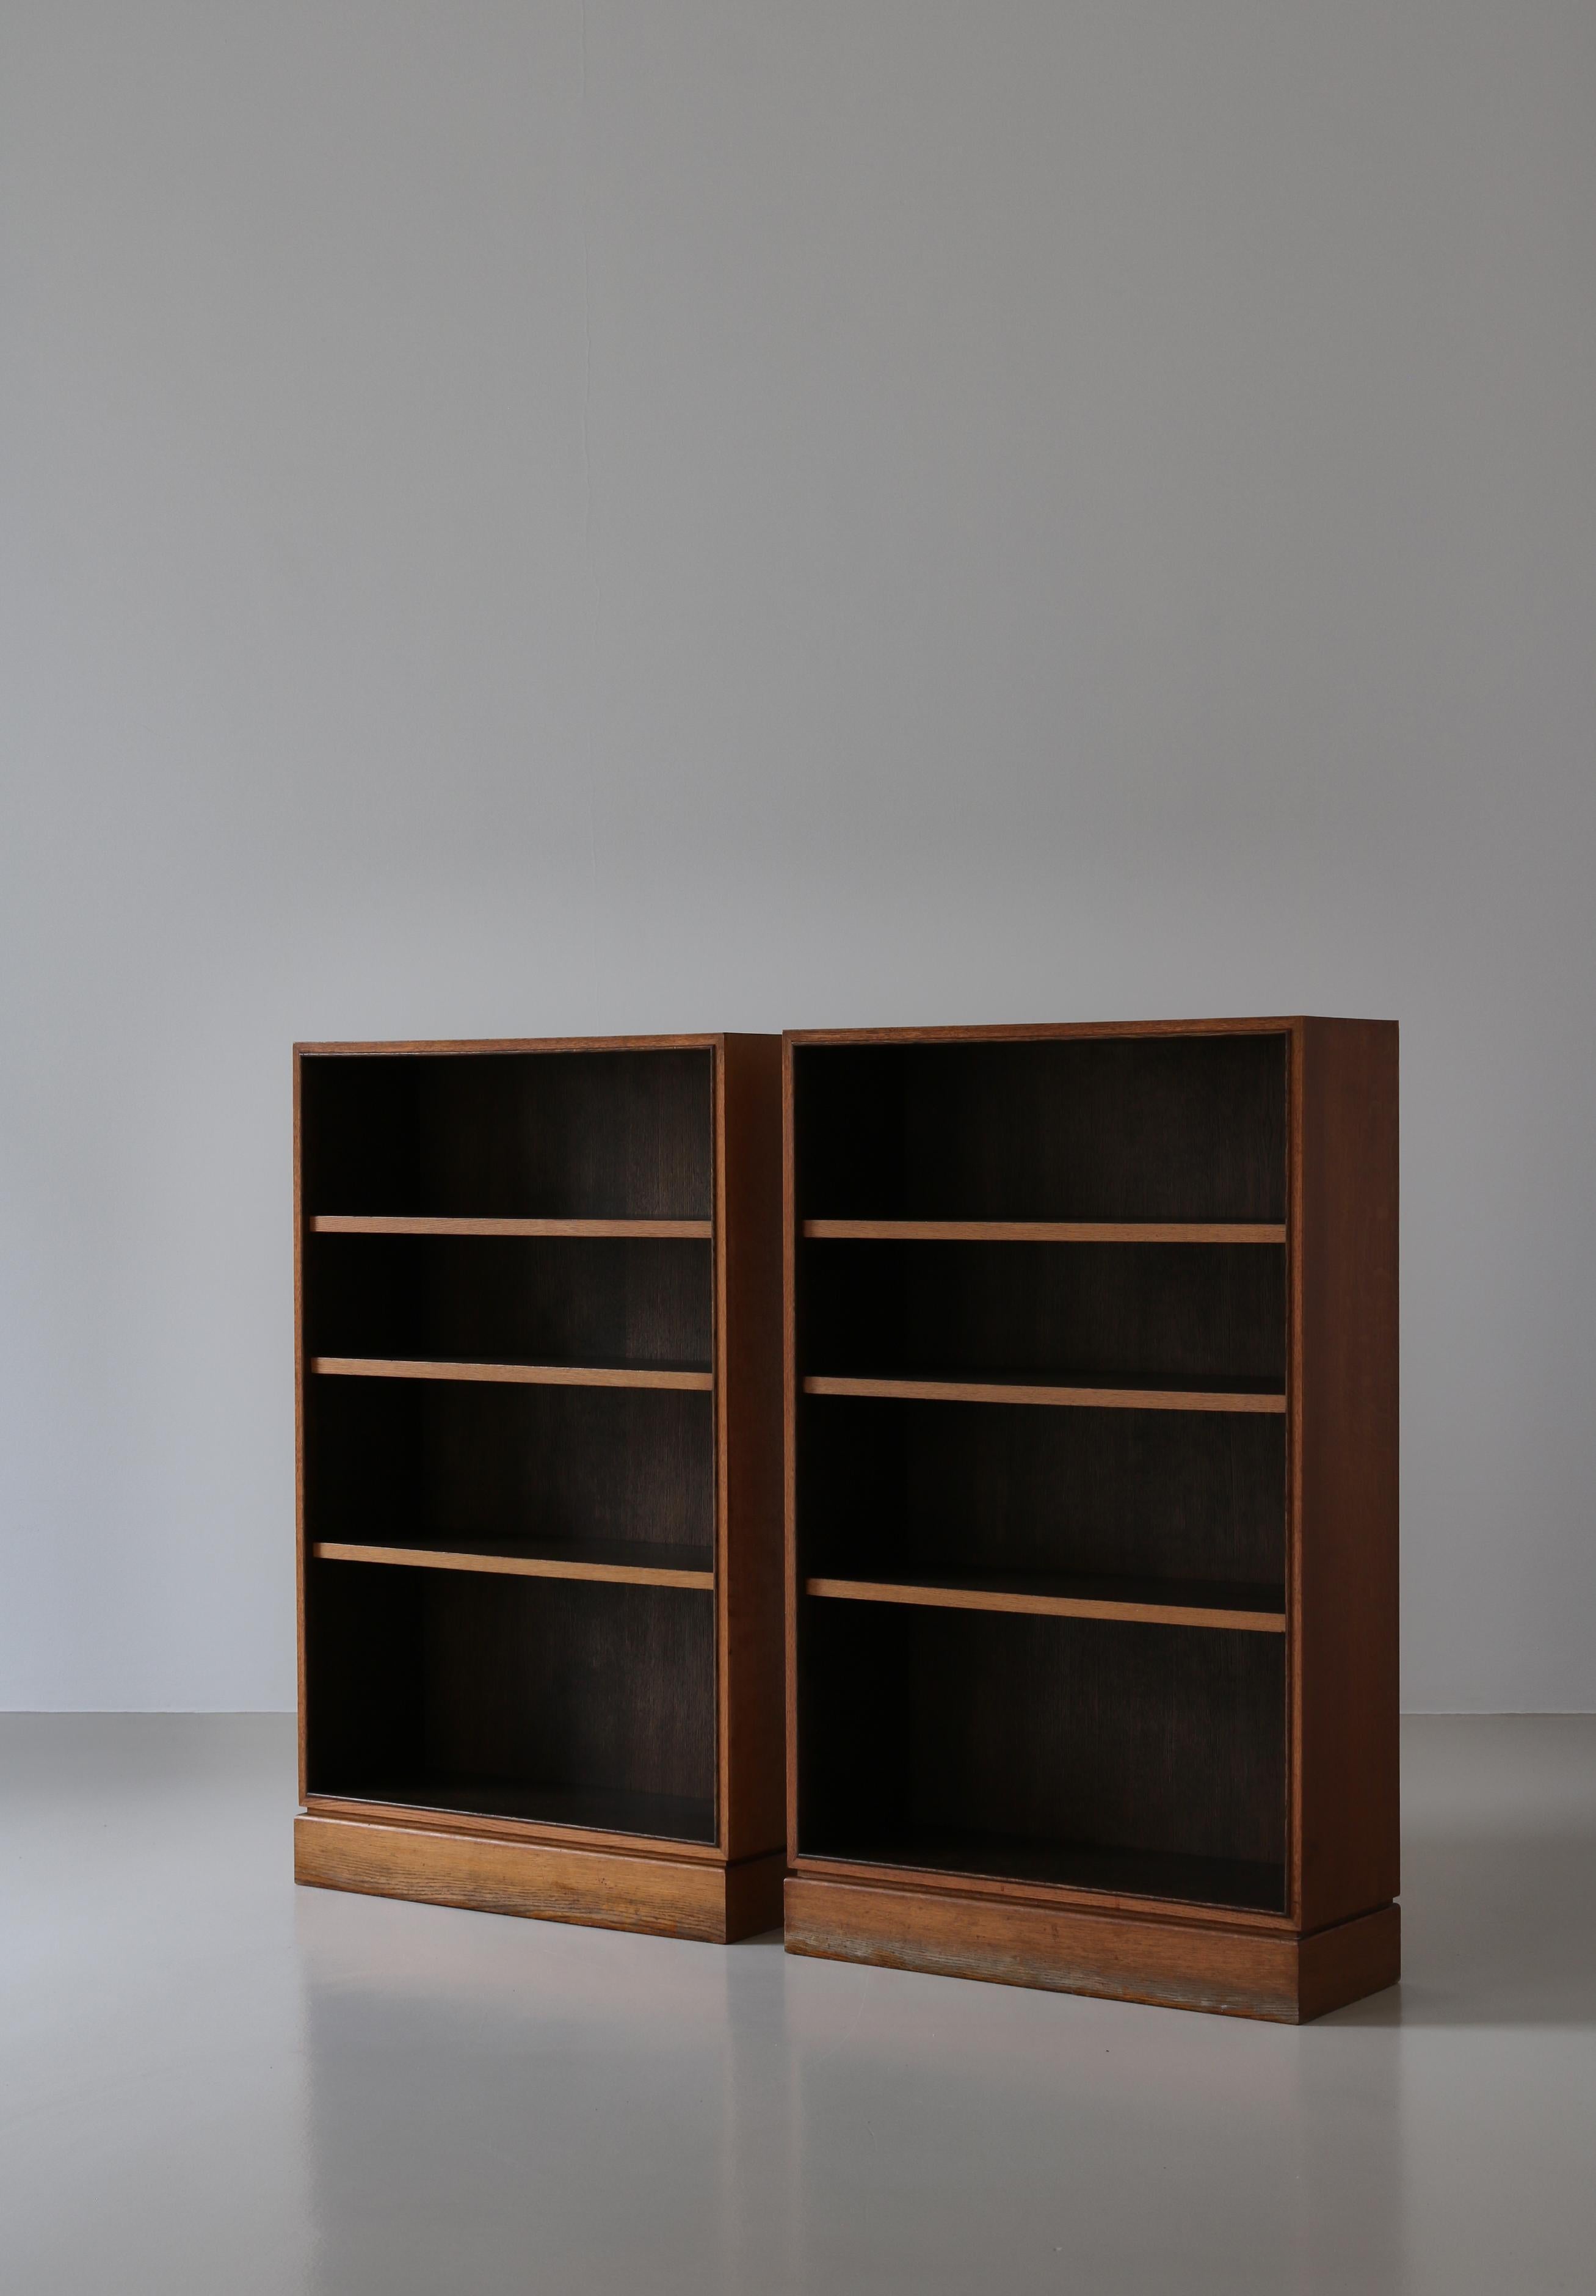 Danish Scandinavian Modern Bookcases in Oak by Cabinetmaker I.P. Mørck, Denmark, 1930s For Sale